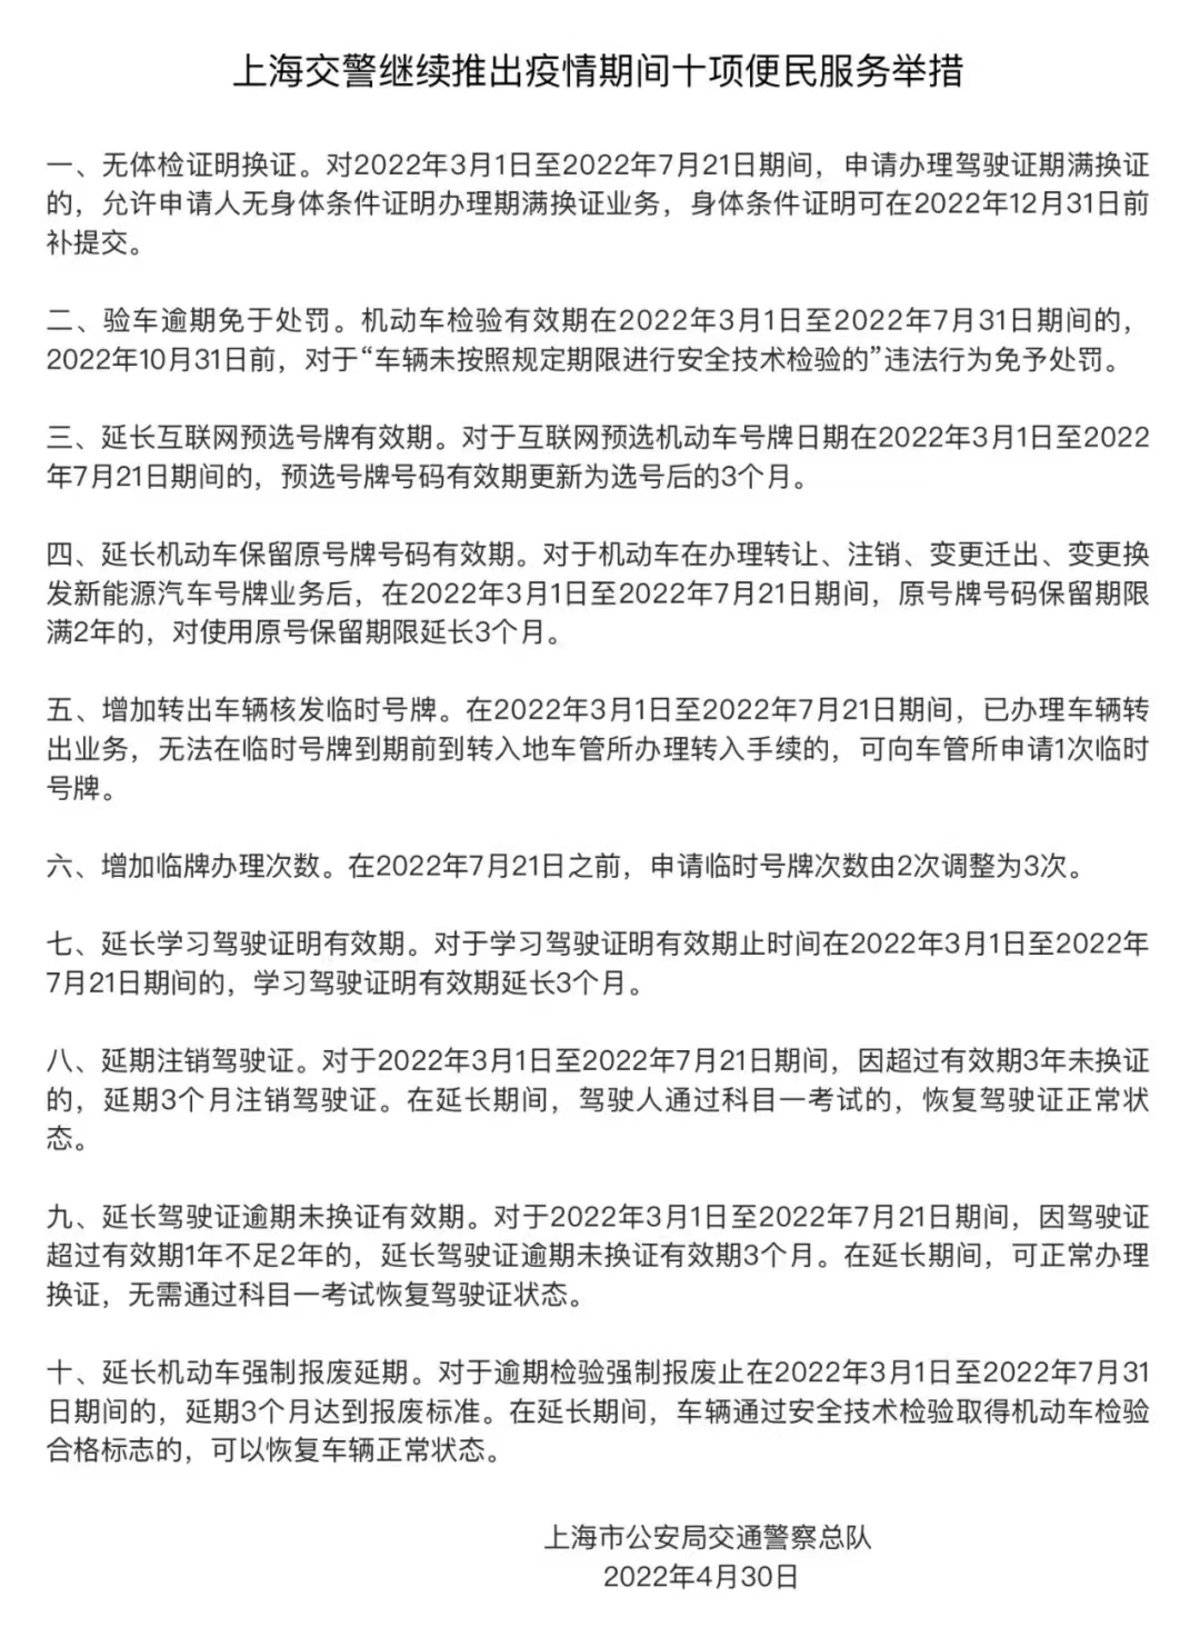 验车逾期免处罚 无体检证明换证 上海交警又推出十项便民服务举措